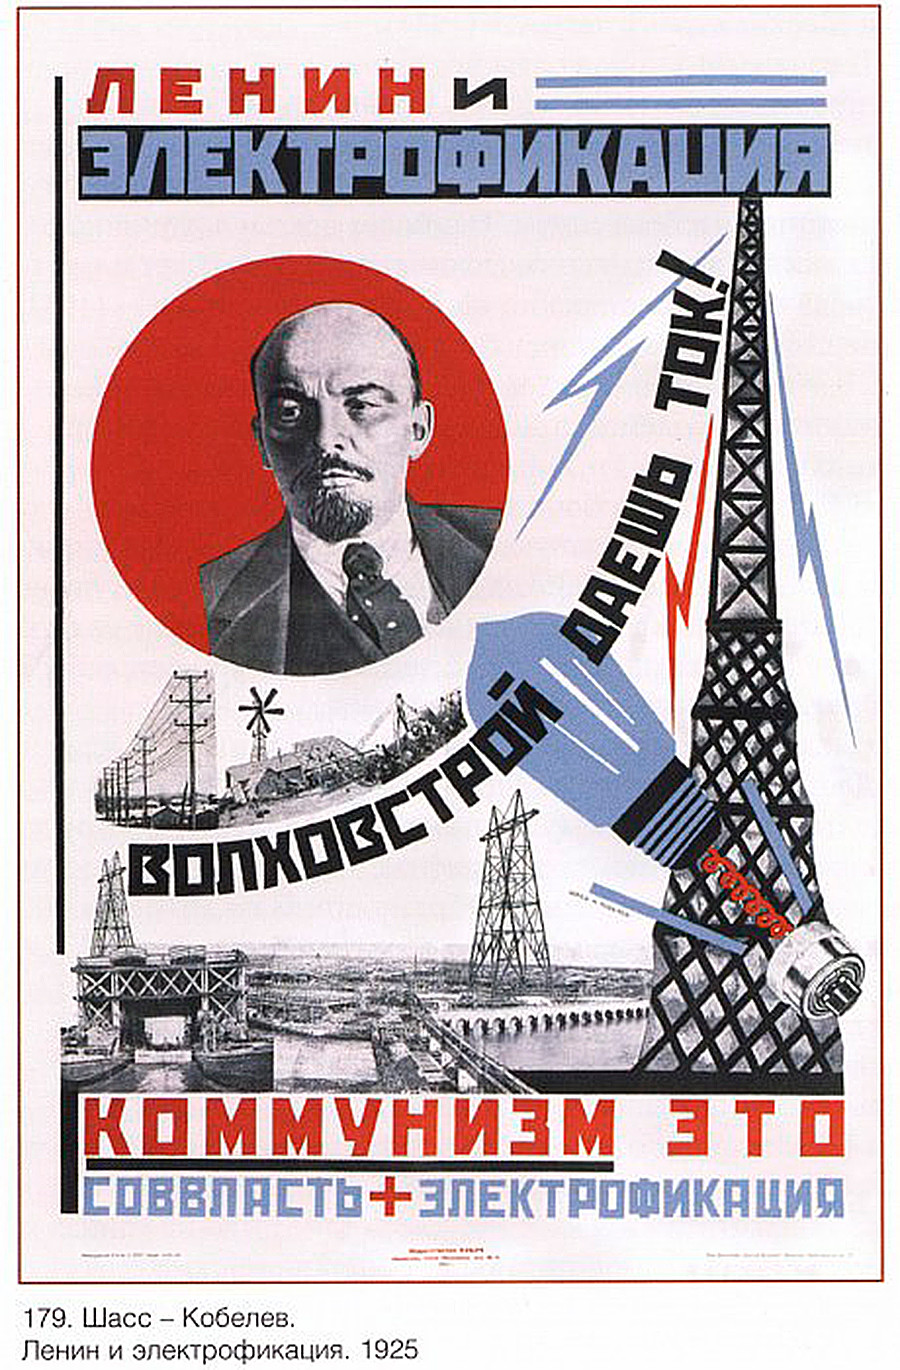 « Lénine et l’électrification. Volkhovstroï donne le courant. Le communisme c’est le pouvoir soviétique + électrification ».